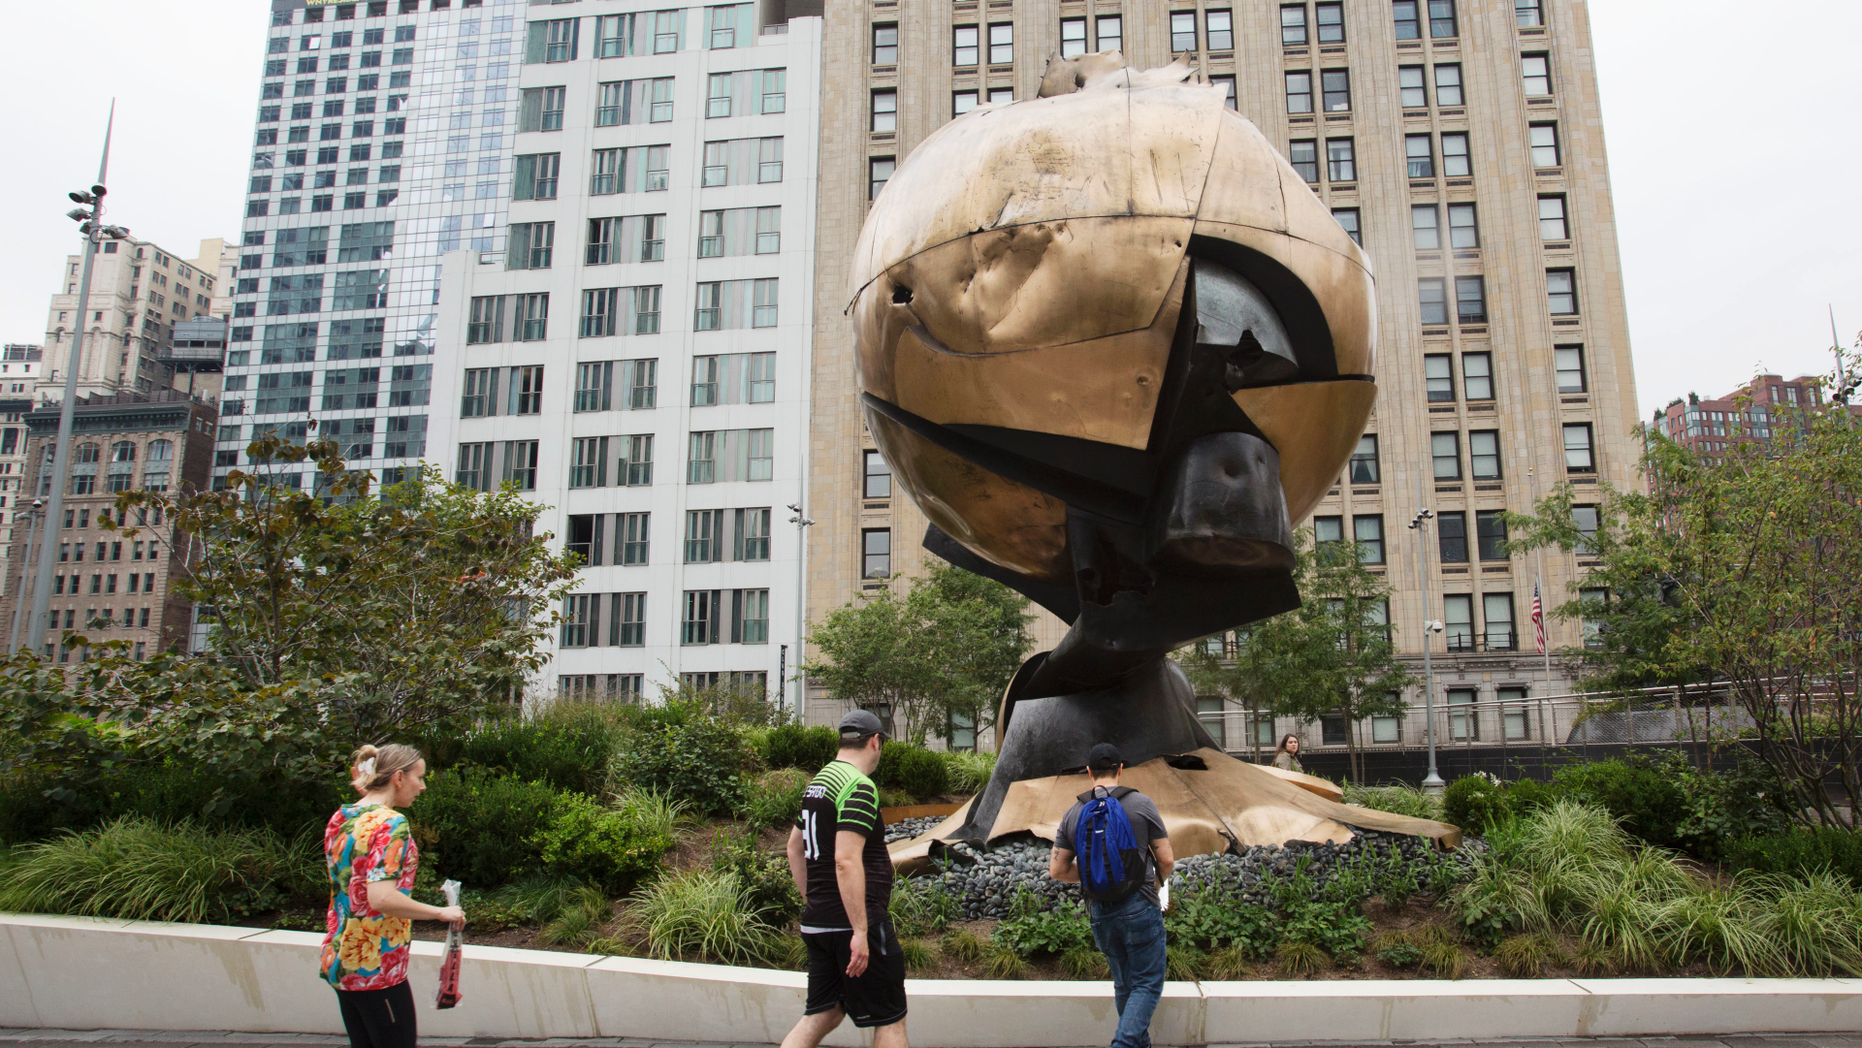 Sphere Sculpture Has New Home Overlooking 9 11 Memorial Fox News